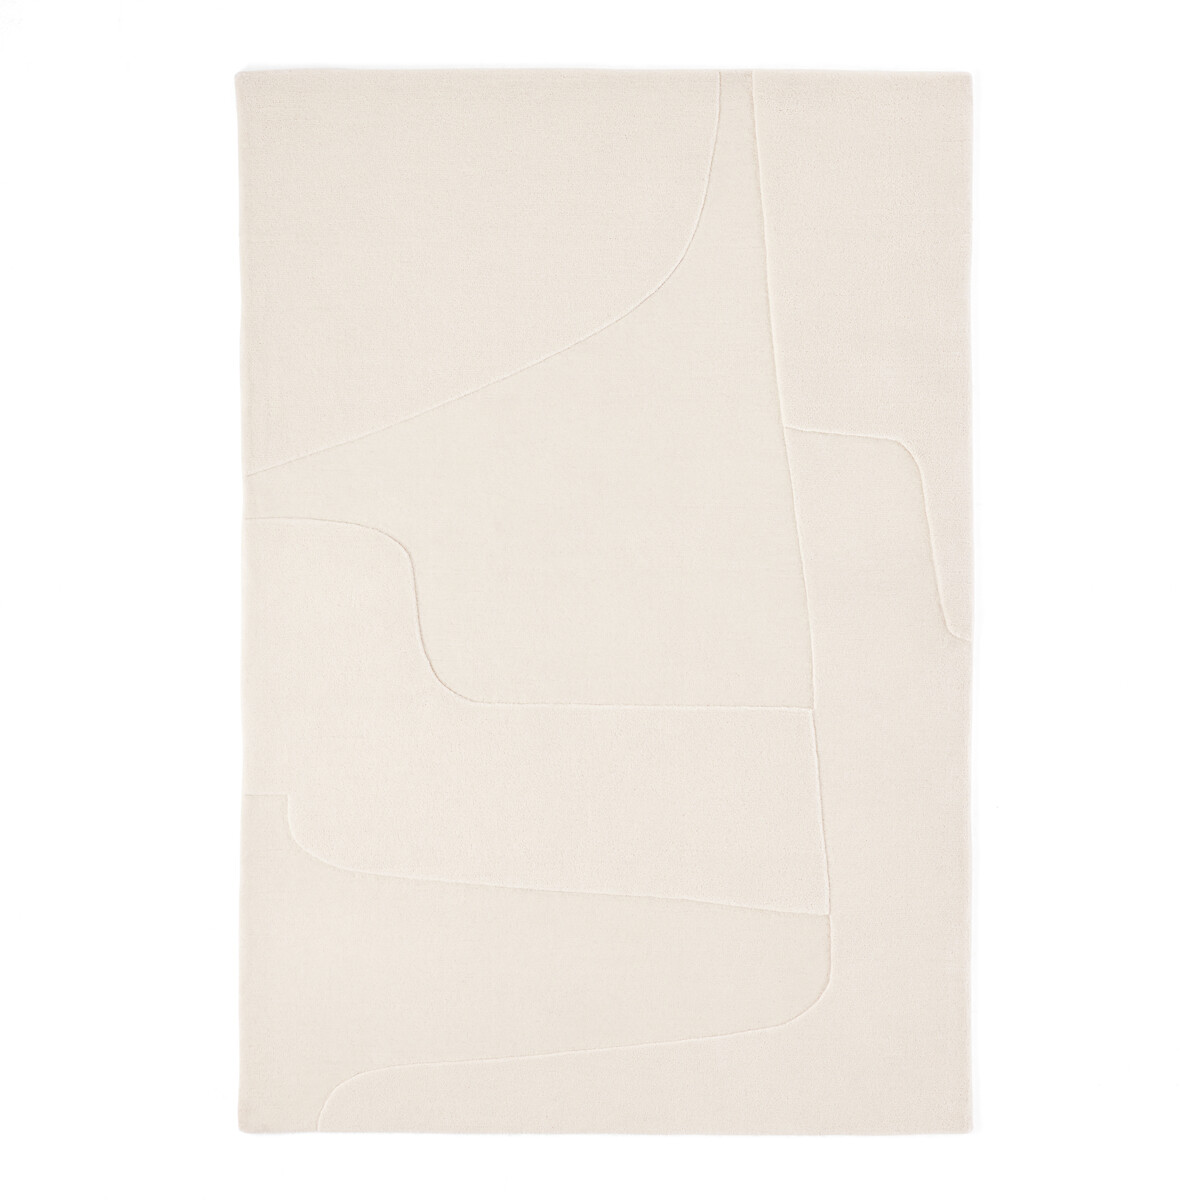 Ковер Современный из шерсти сотканный вручную Sahil 160 x 230 см бежевый LaRedoute, размер 160 x 230 см - фото 5